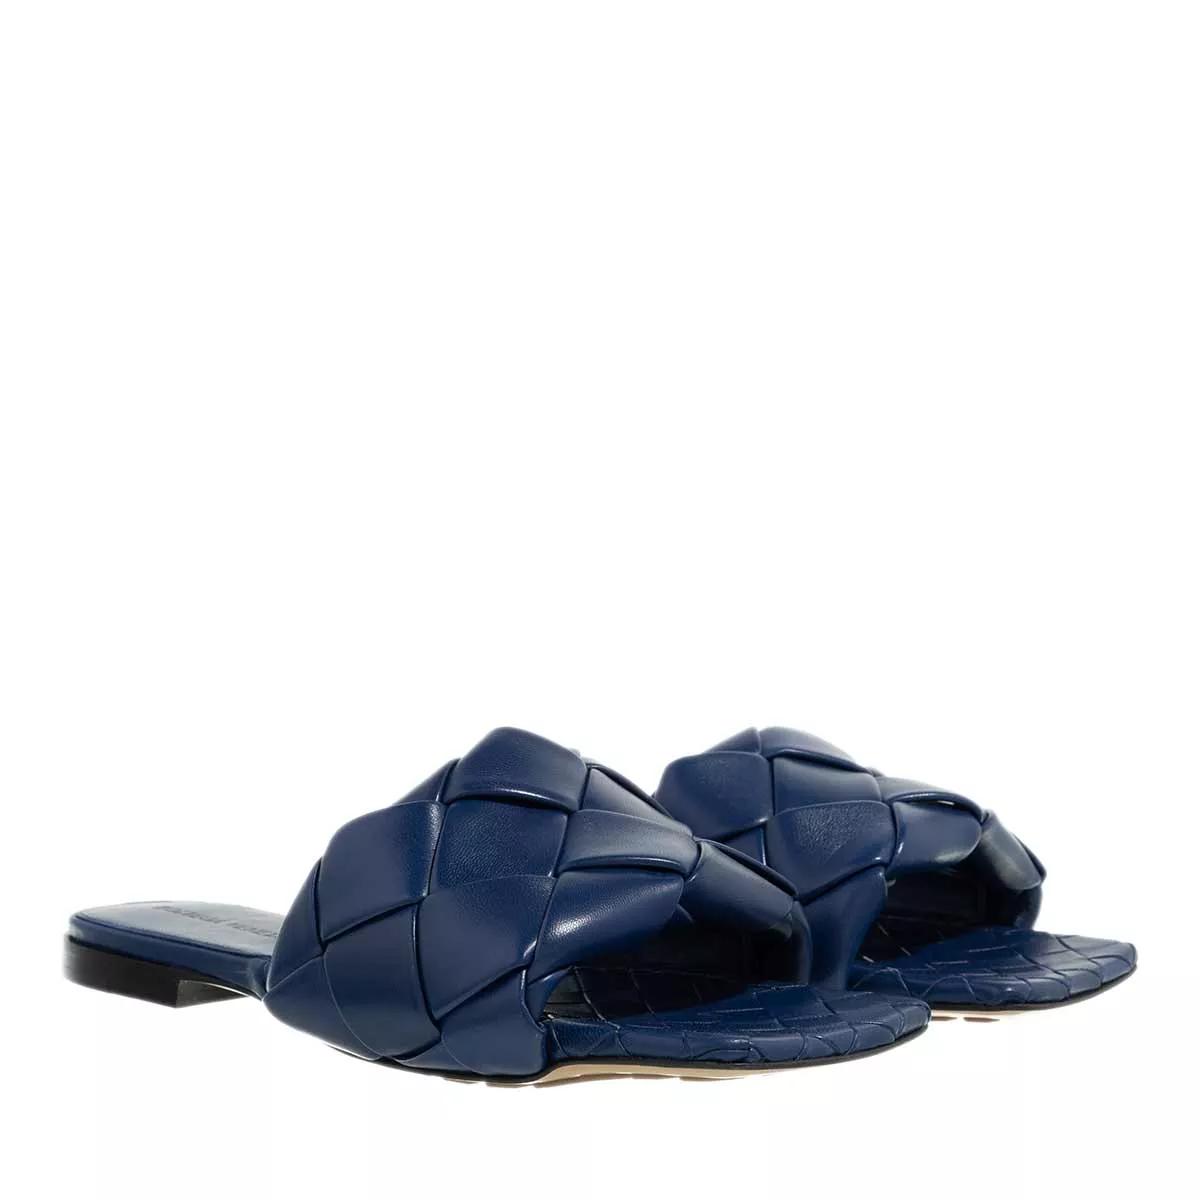 Bottega Veneta Loafers & Ballerinas - Lido Intrecciato Flat Sandals - Gr. 36 (EU) - in Blau - für Damen von Bottega Veneta